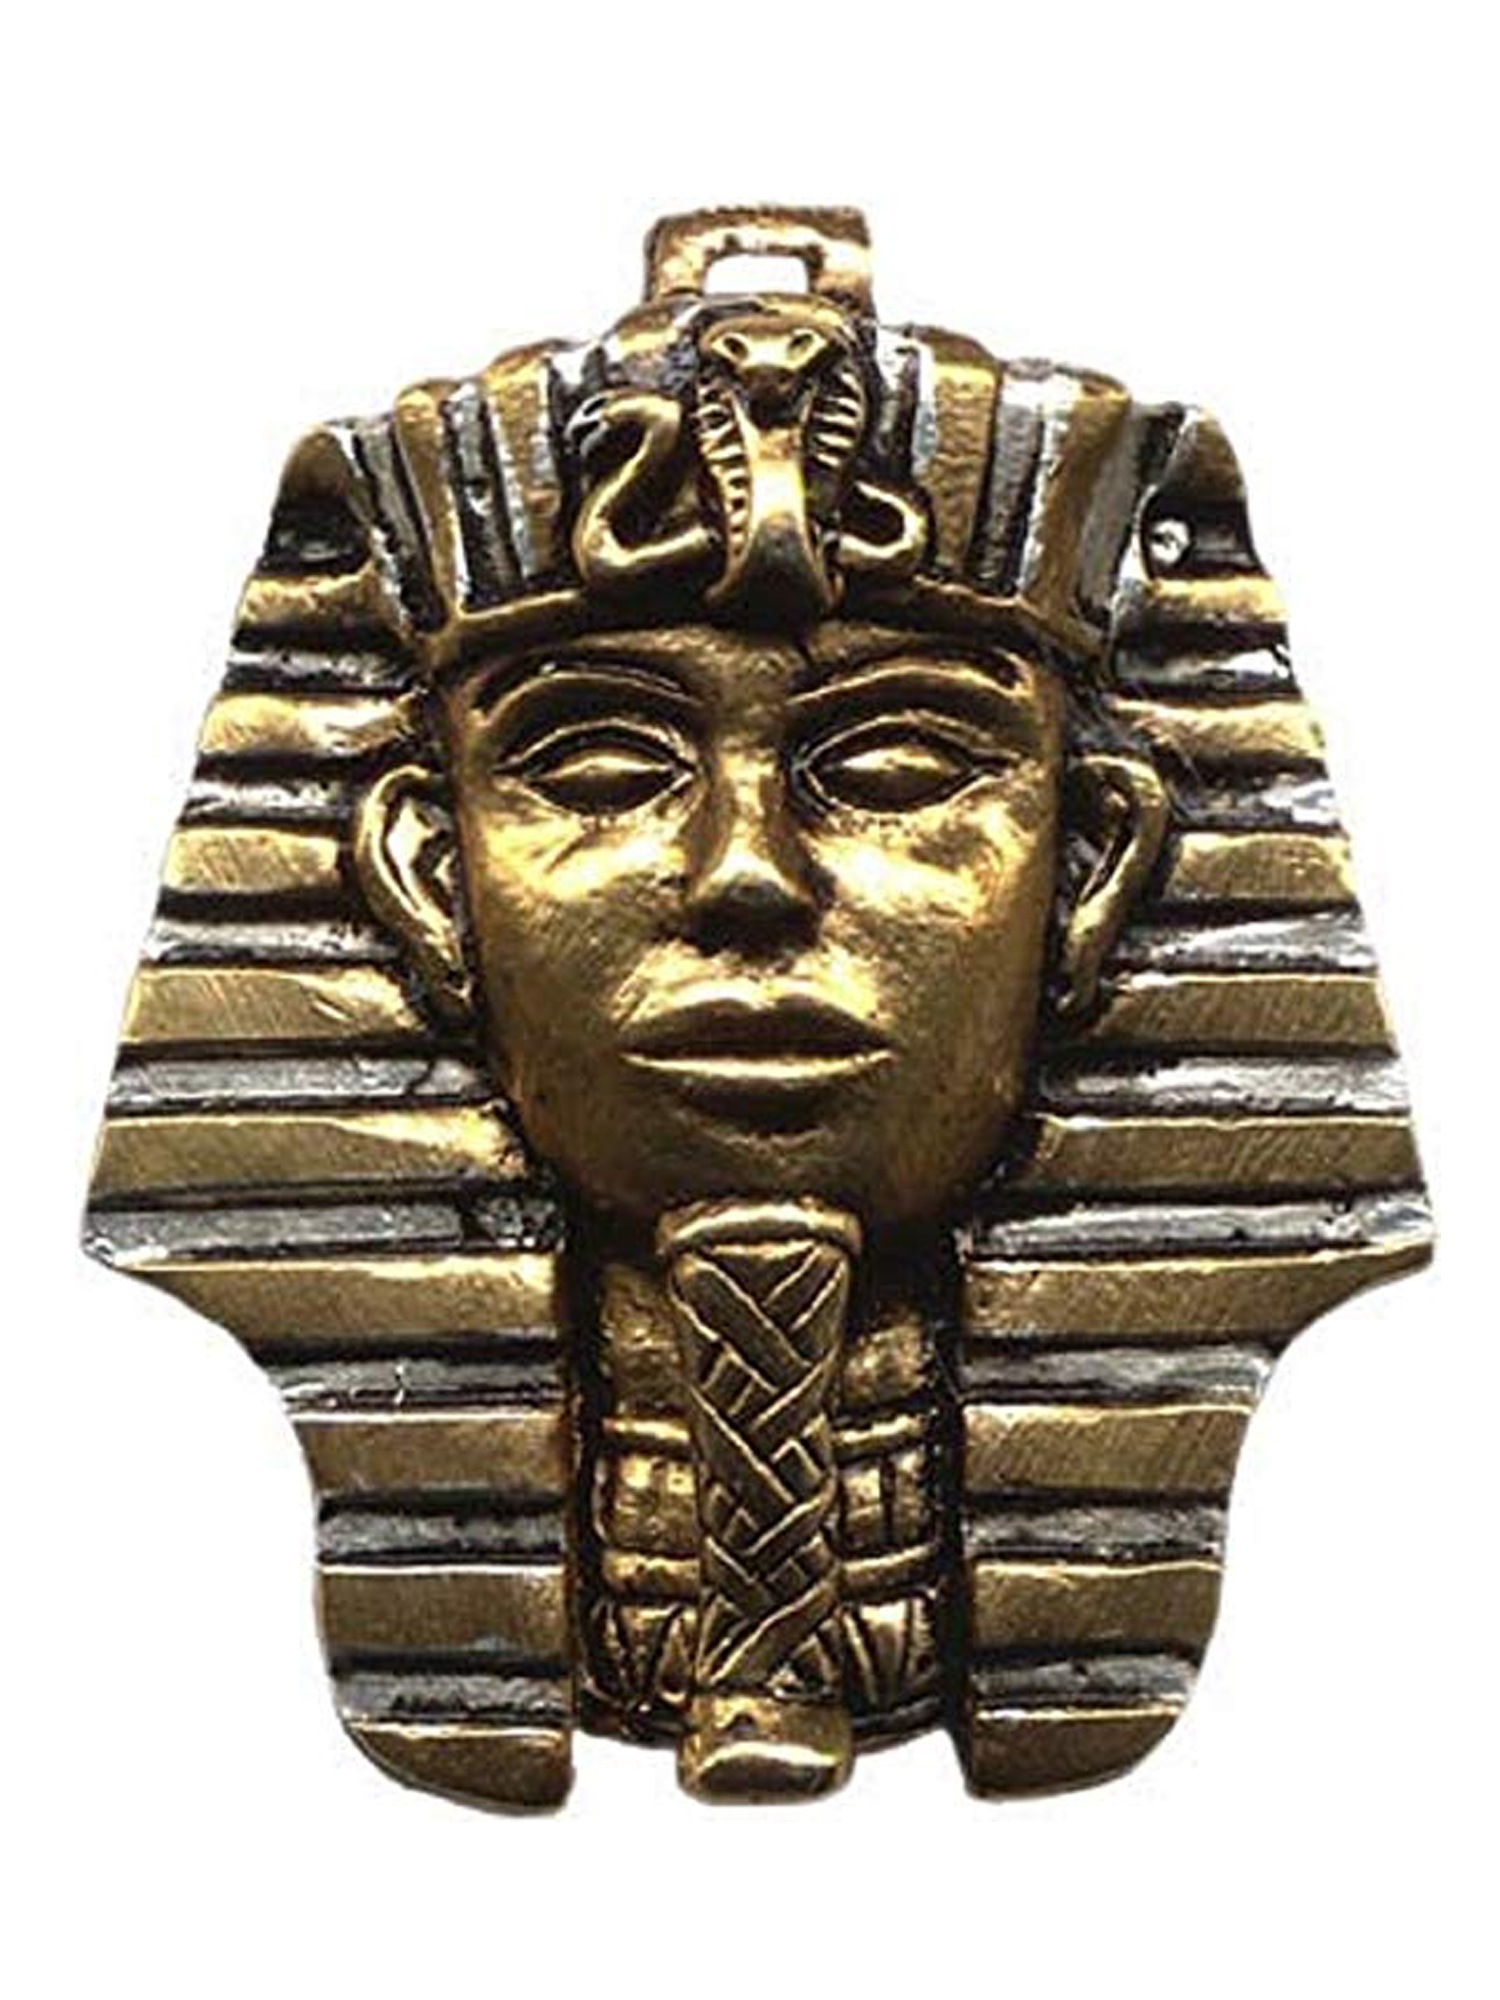 Tutankhamun Juwel Atum des Amulett Erreichen Adelia´s Zielen von Für Ra - Talisman Anhänger